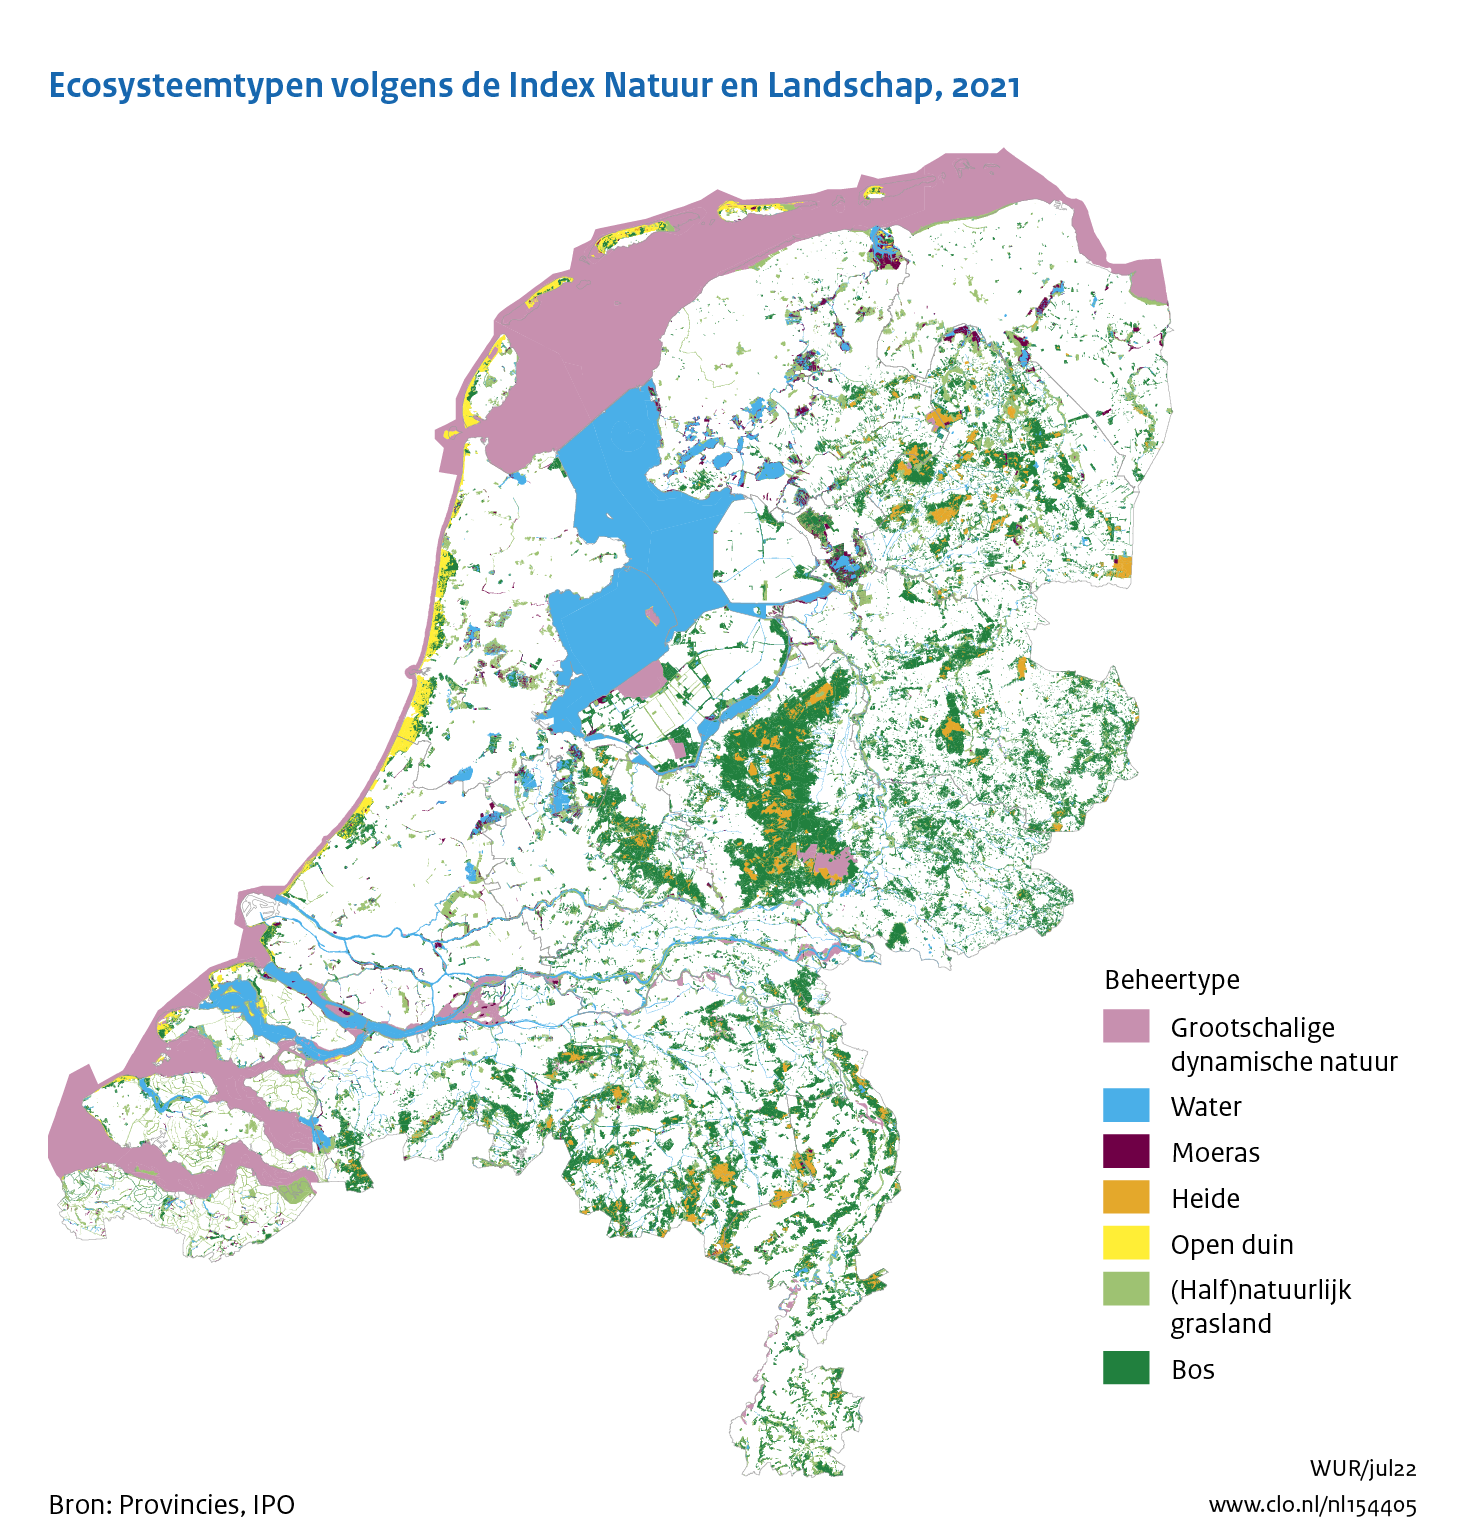 Figuur Ecosysteemtypen op basis van de Index NL. In de rest van de tekst wordt deze figuur uitgebreider uitgelegd.